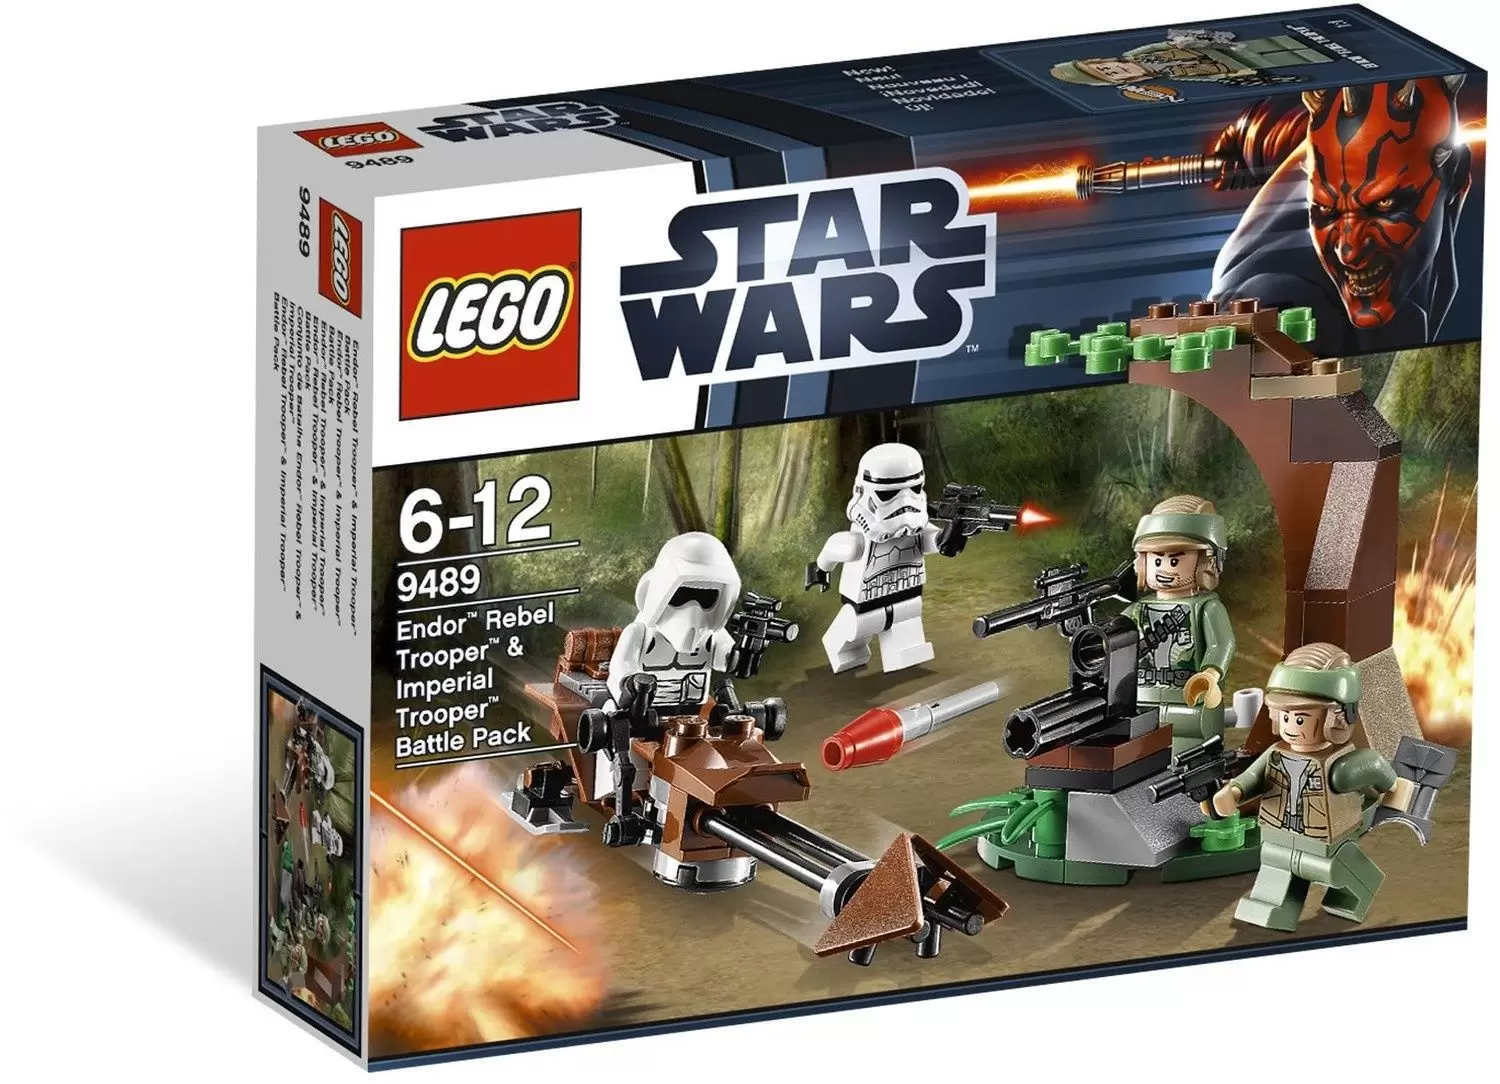 LEGO Star Wars - Endor Rebel Trooper & Imperial Trooper Battle Pack